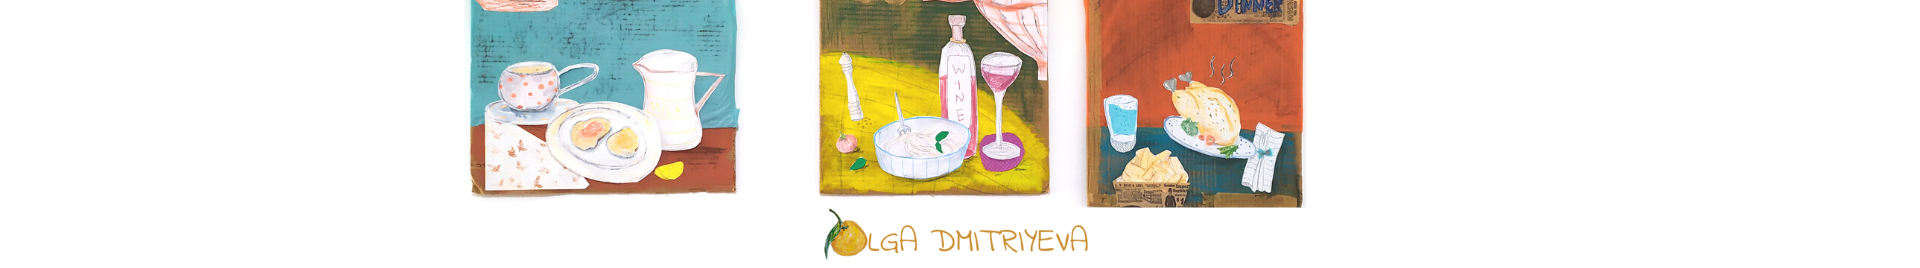 Olga Dmitriyeva 的個人檔案橫幅